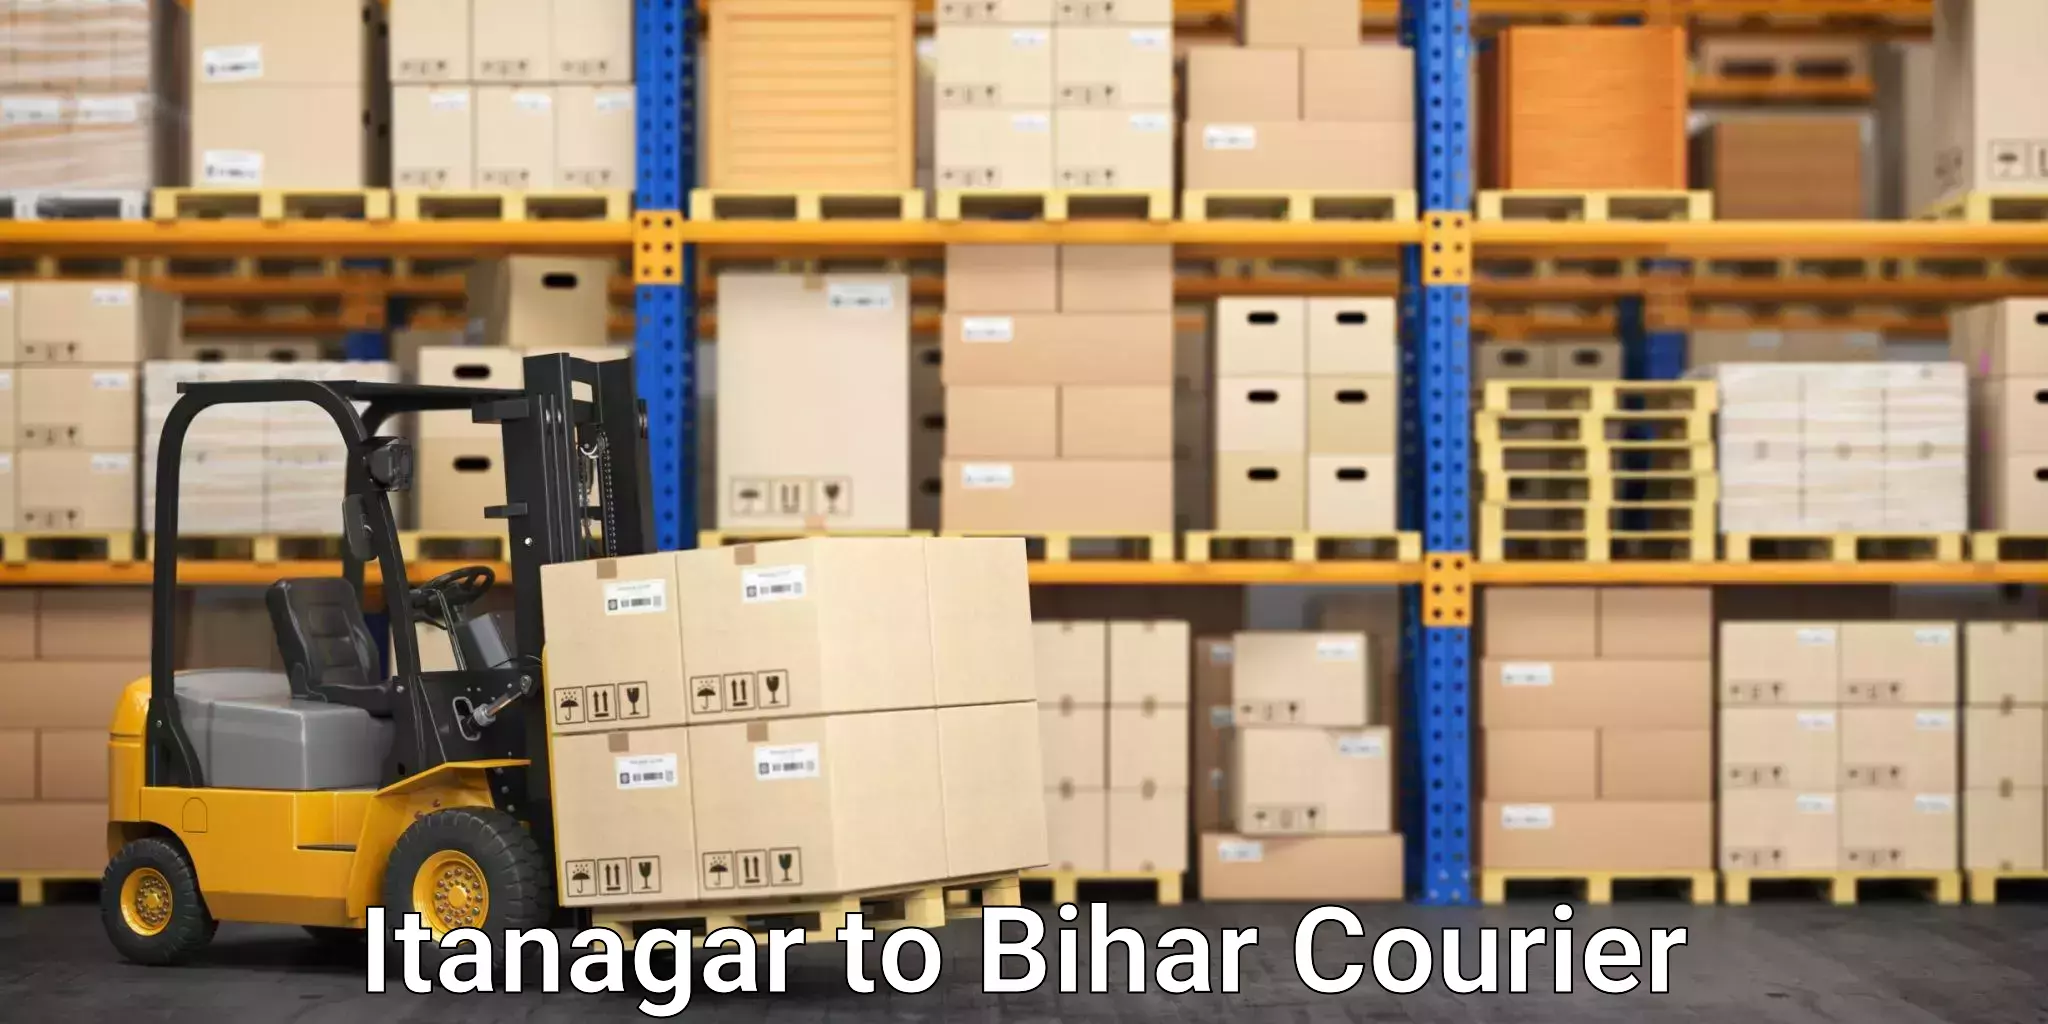 Express courier facilities Itanagar to Bihar